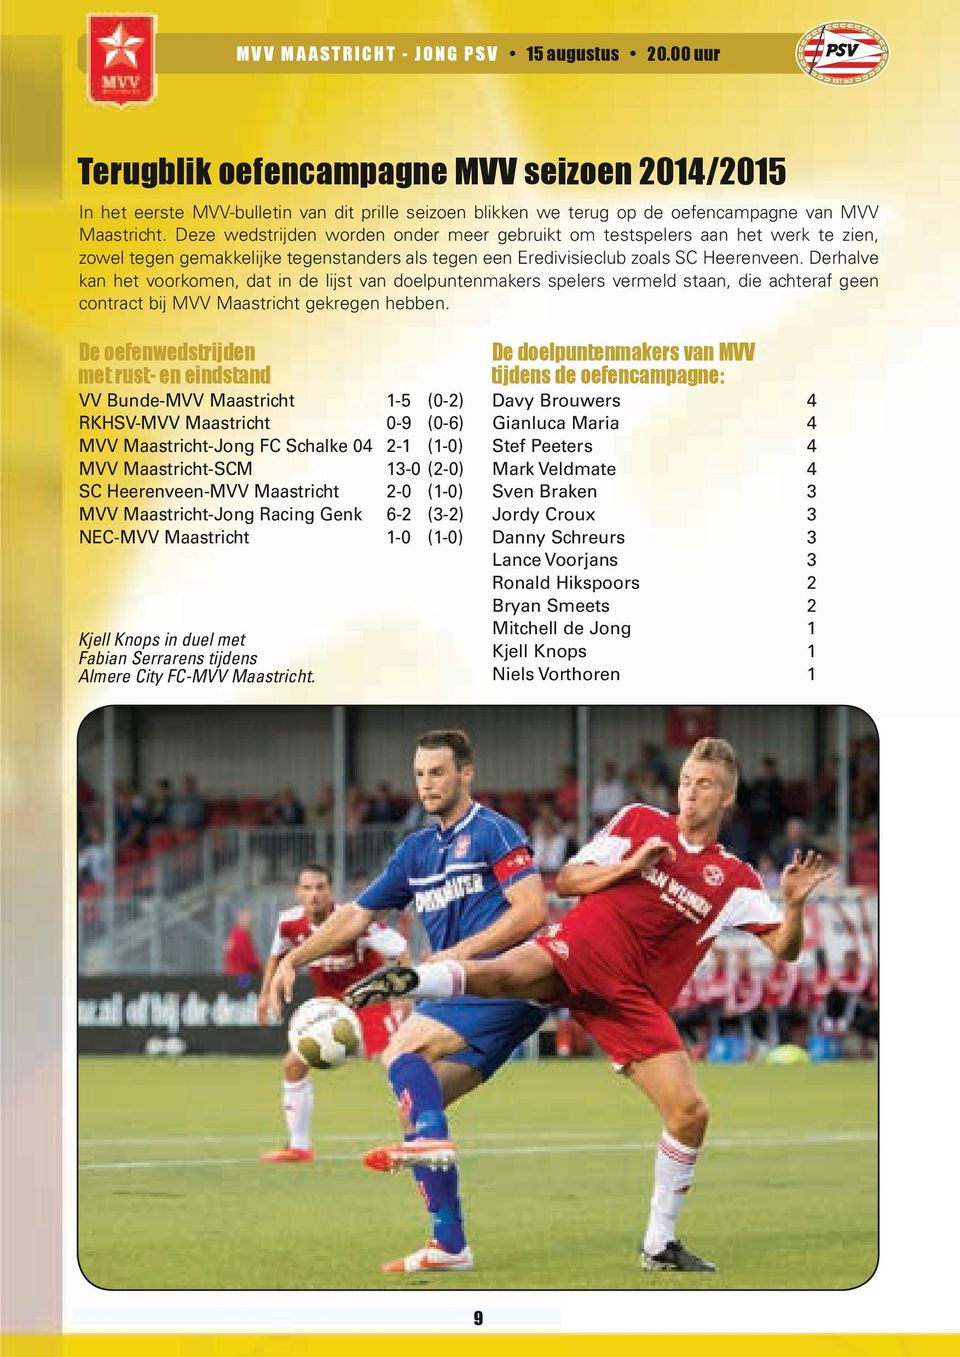 Derhalve kan het voorkomen, dat in de lijst van doelpuntenmakers spelers vermeld staan, die achteraf geen contract bij MVV Maastricht gekregen hebben.